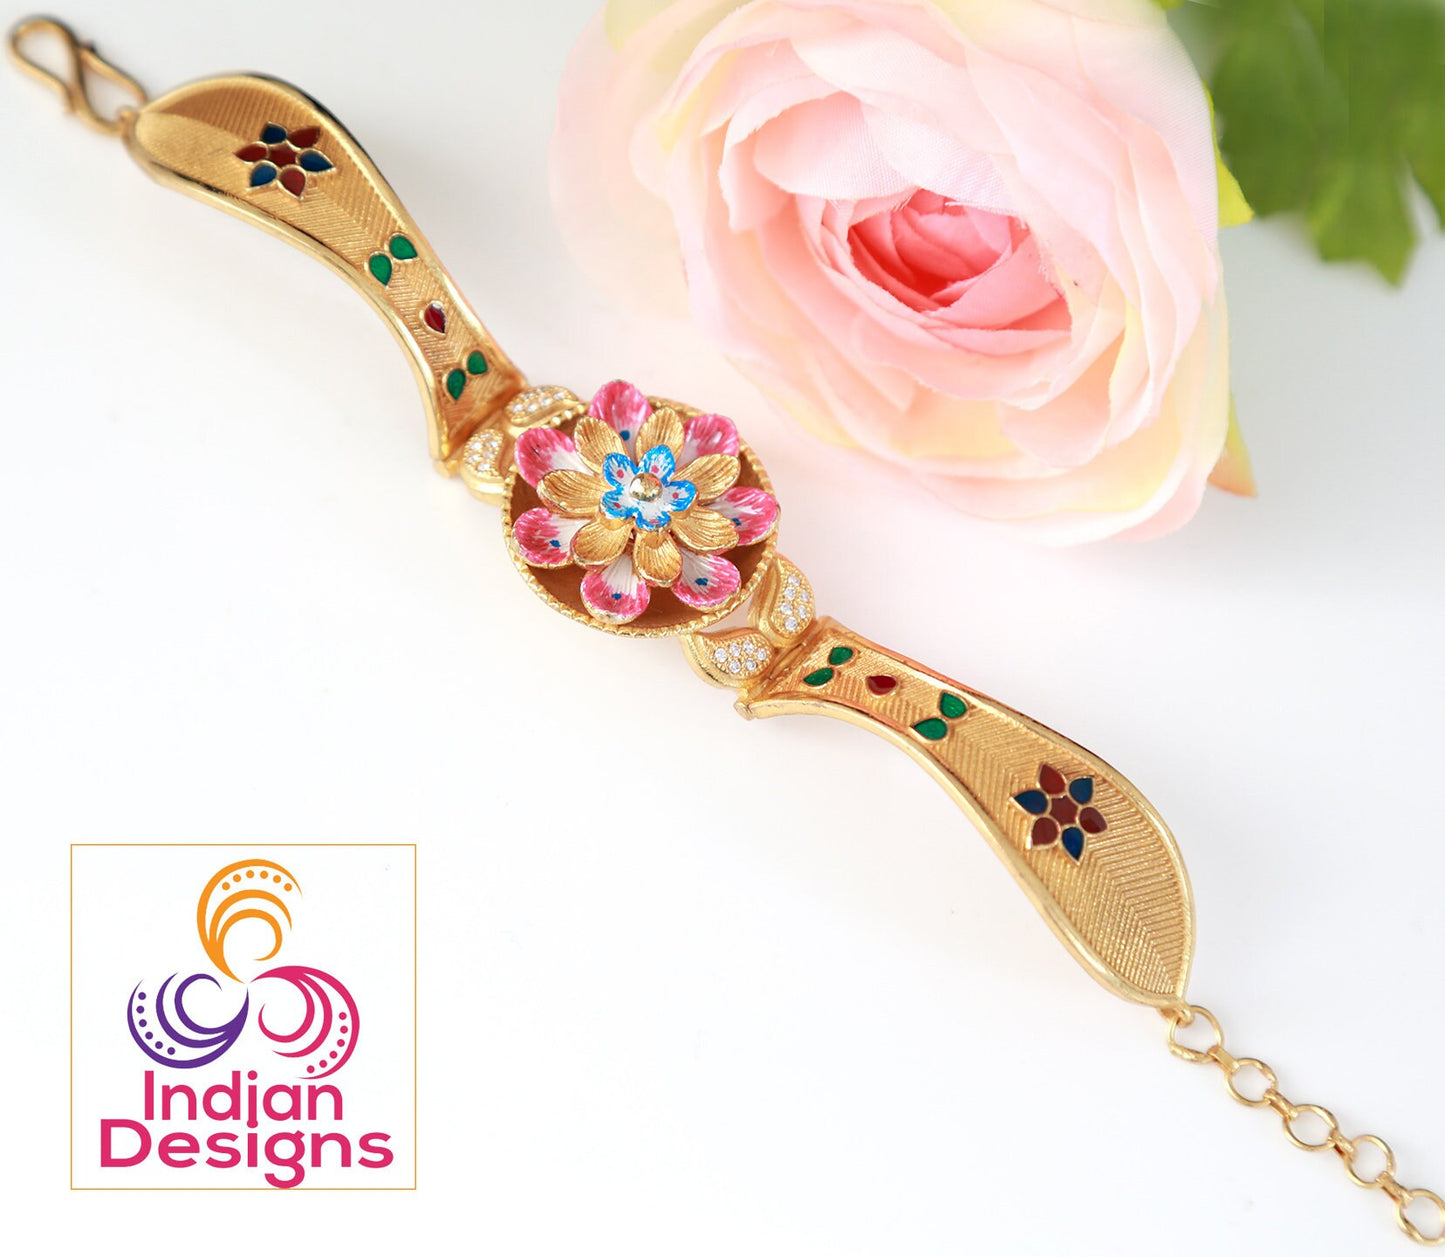 Gold plated bracelet for women | Traditional indian bracelets | Antique Gold tone bracelet designs | Indian jewelry bangle bracelets designs